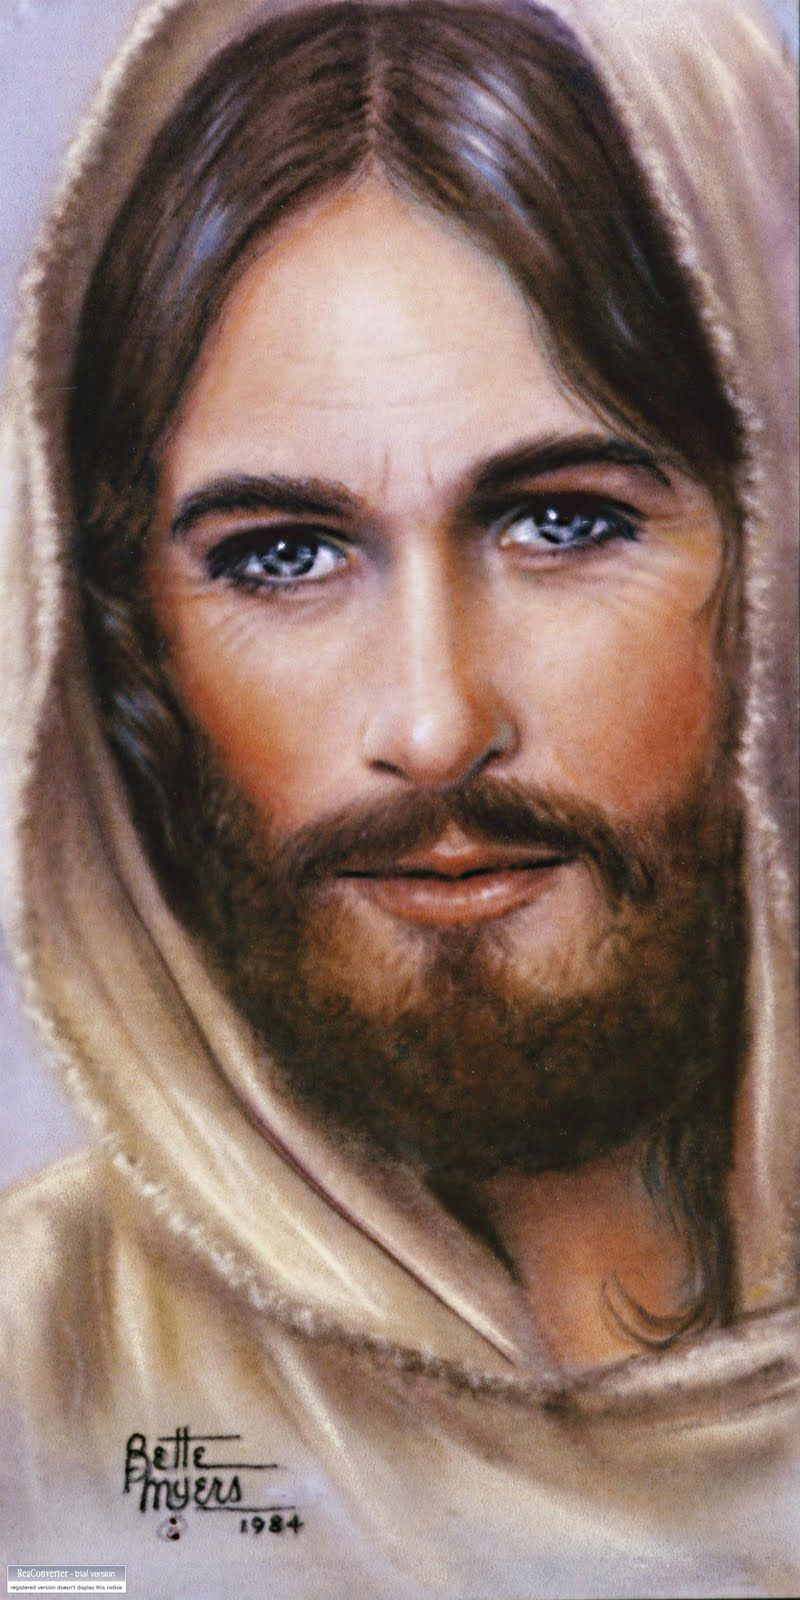 Drawings Of Jesus Eyes Untitled Jpg 800a 1 600 Pixeles Jesus Pinterest Heavenly Death